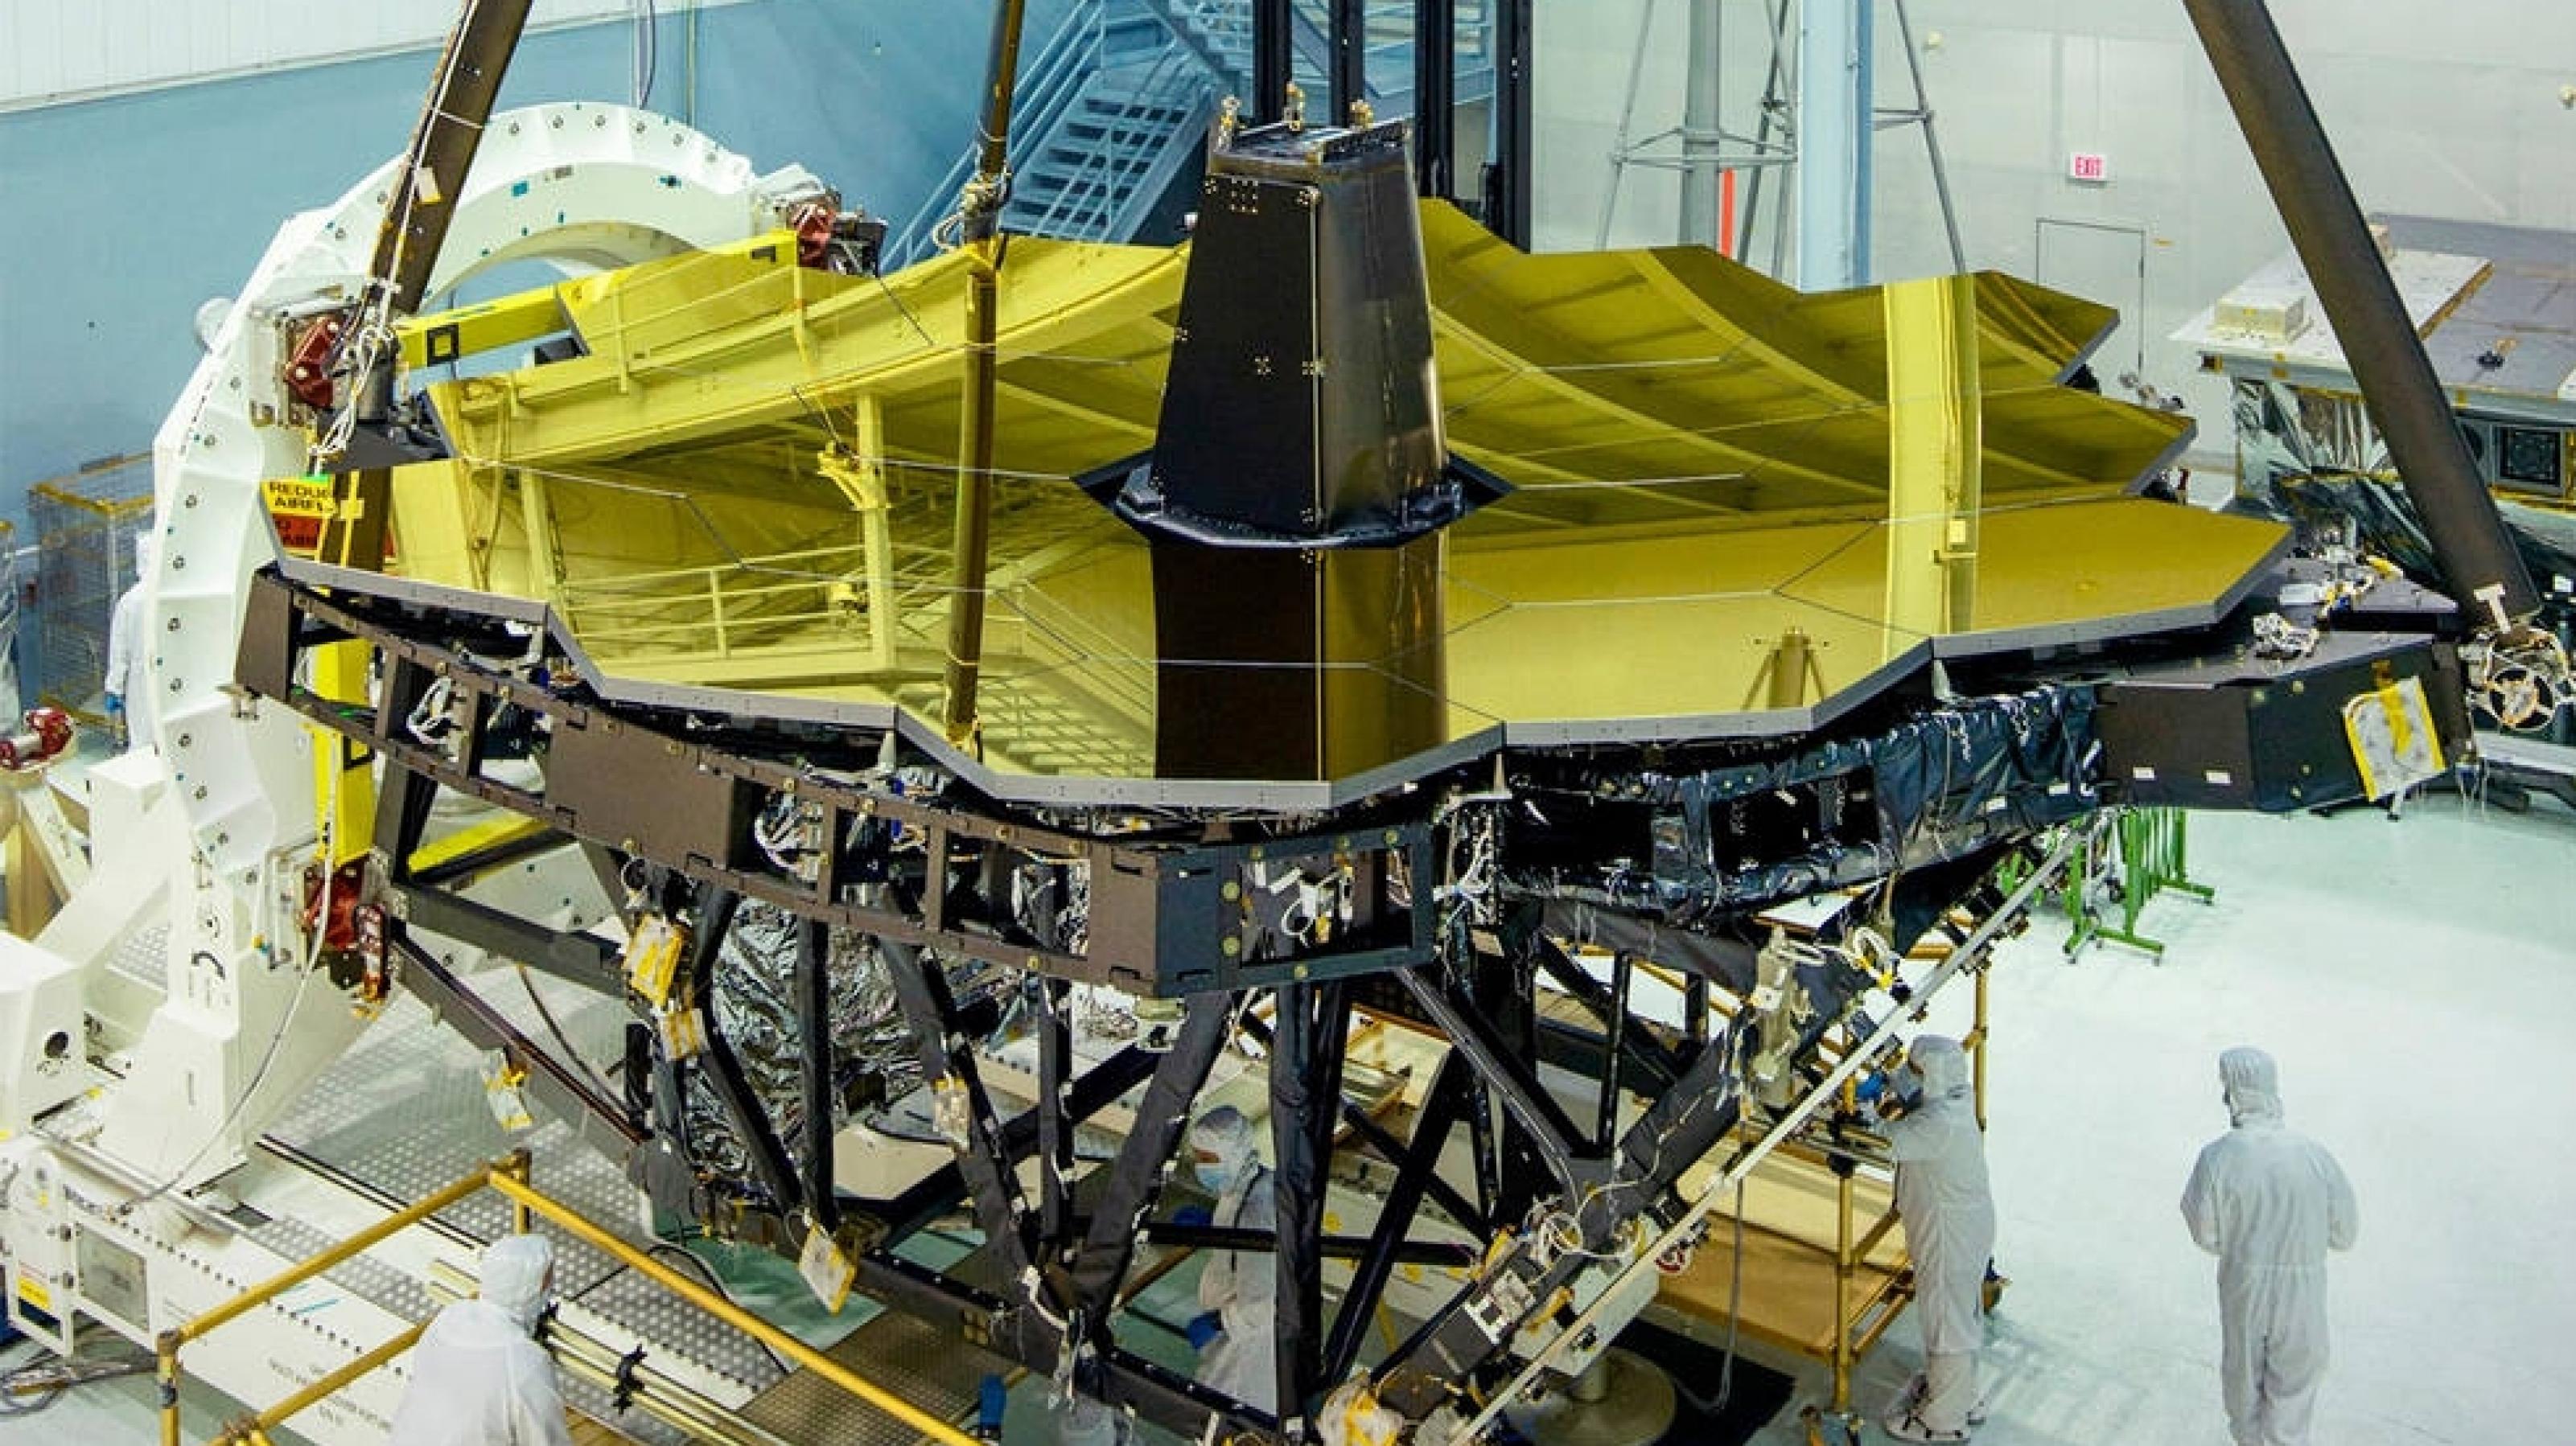 James-Webb-Teleskop im Reinraum mit seinen goldenen Spiegelelementen